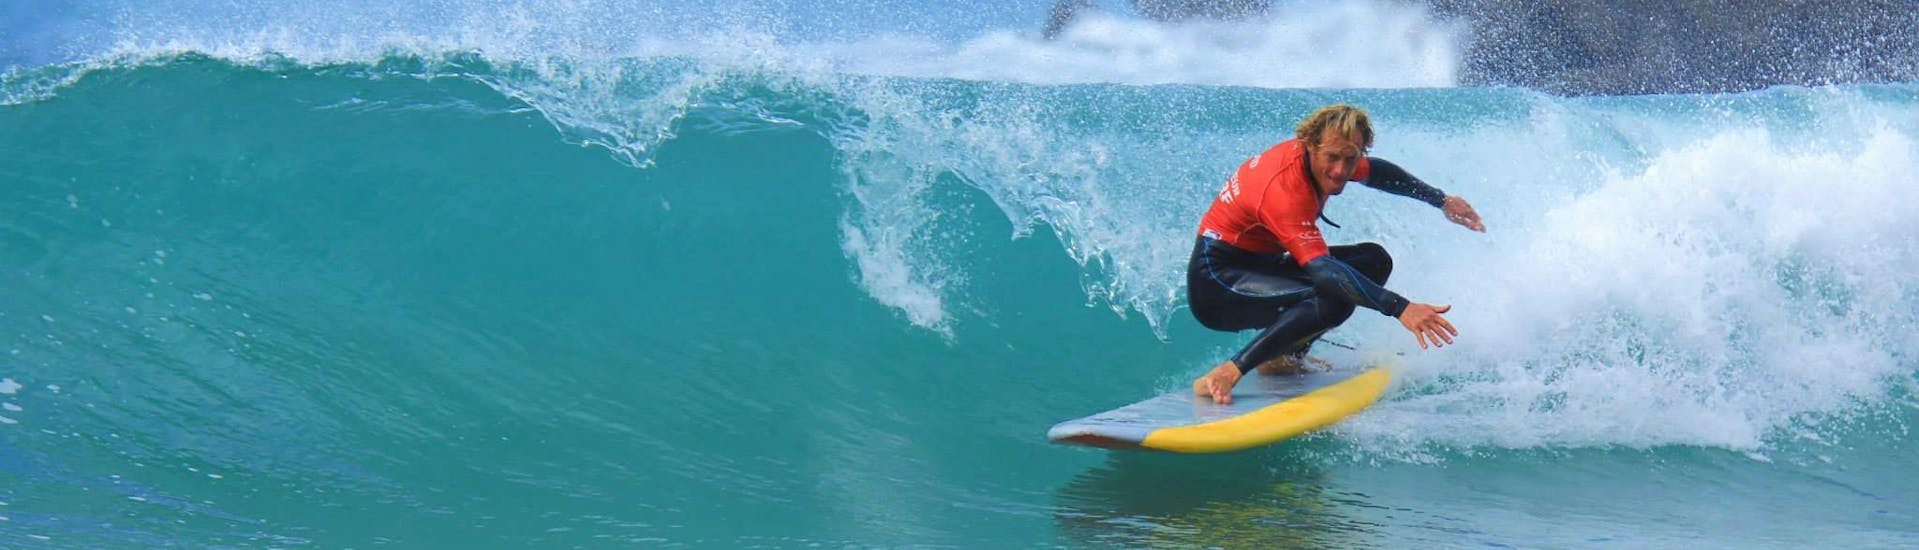 Een surfster slaagt erin op een golf te surfen dankzij haar surflessen op het strand van de Côte des Basques met La Vague basque.